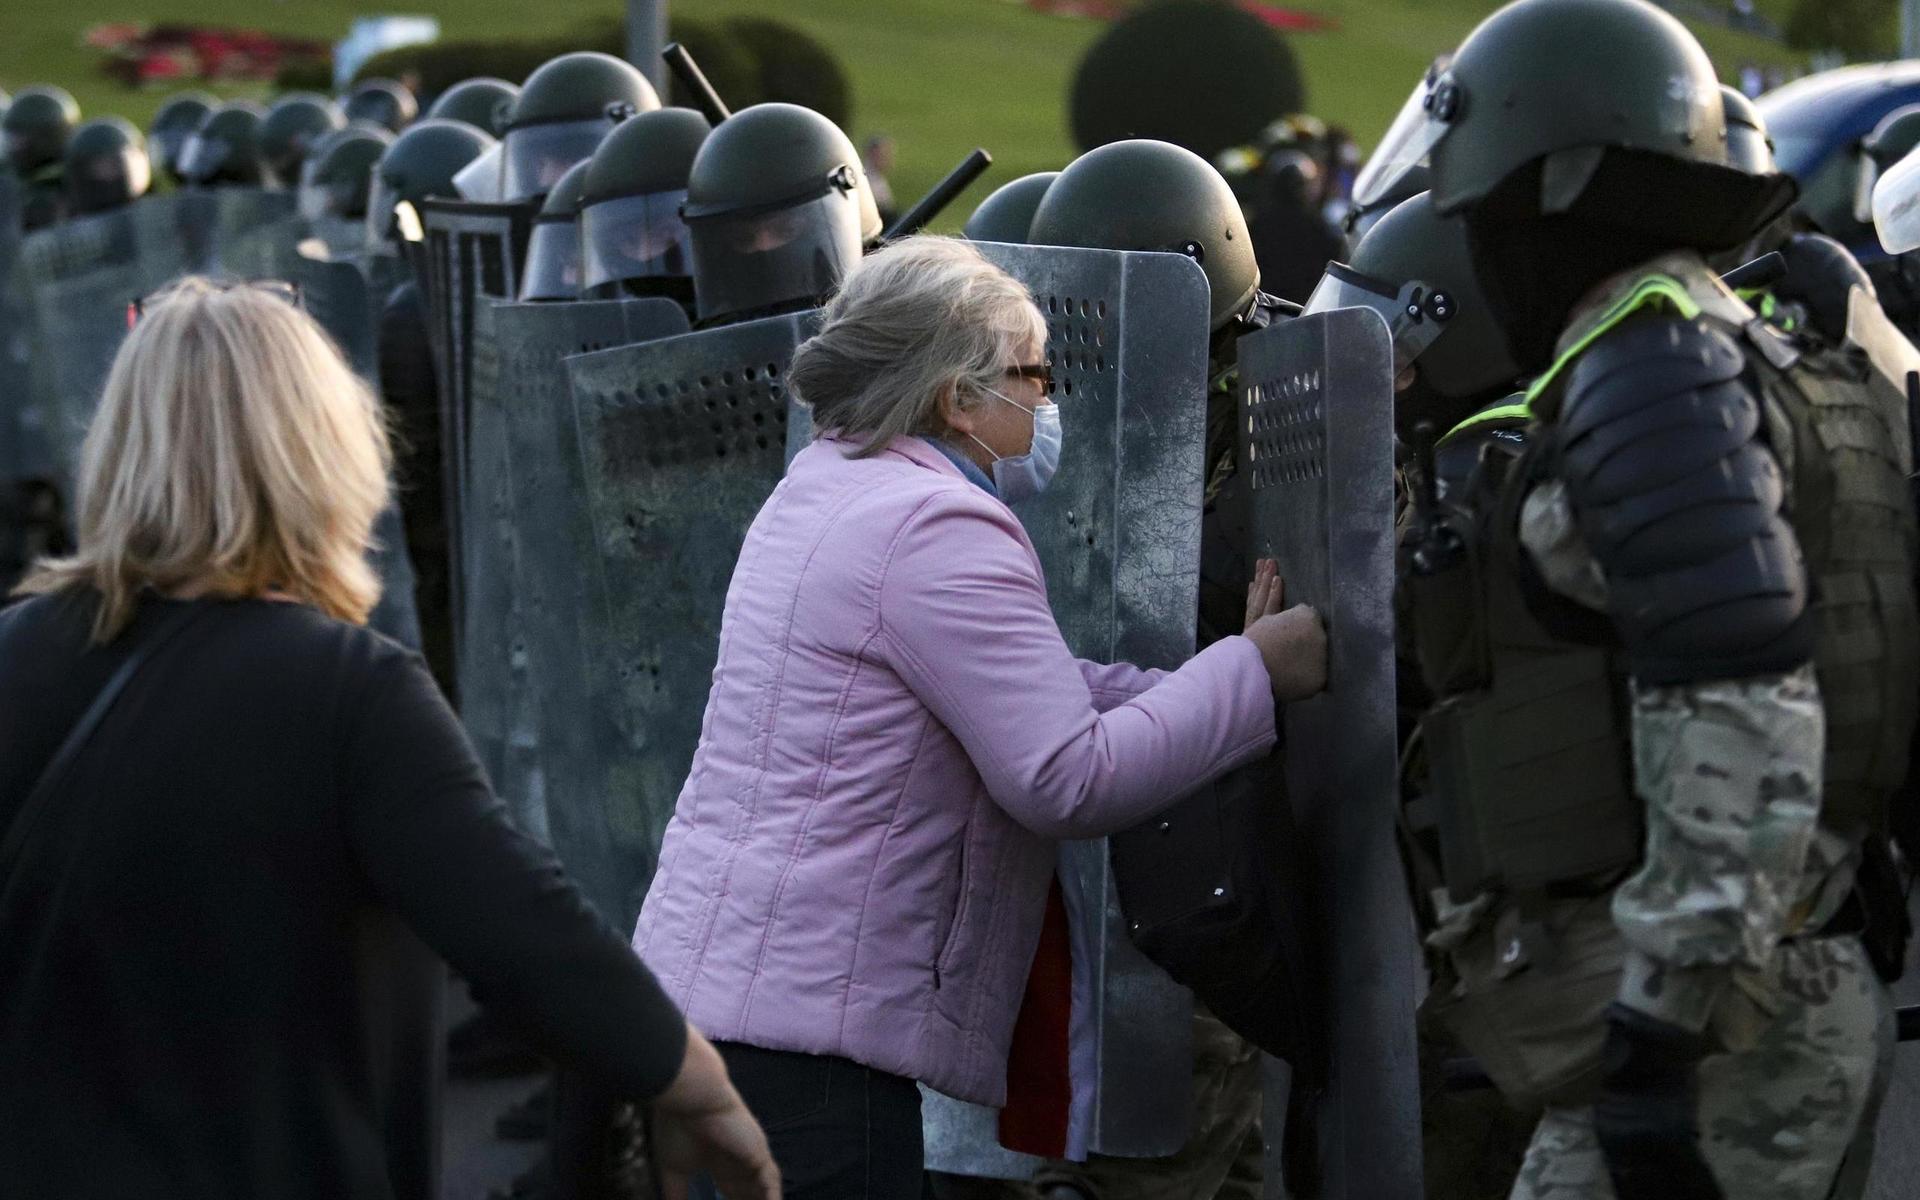 En kvinna argumenterar med polisen under en demonstration i Minsk. En fredlig taktik för de protesterande för att stoppa våldet har blivit att försöka avmaskera poliserna, som då avlägsnar sig för att inte bli igenkända.